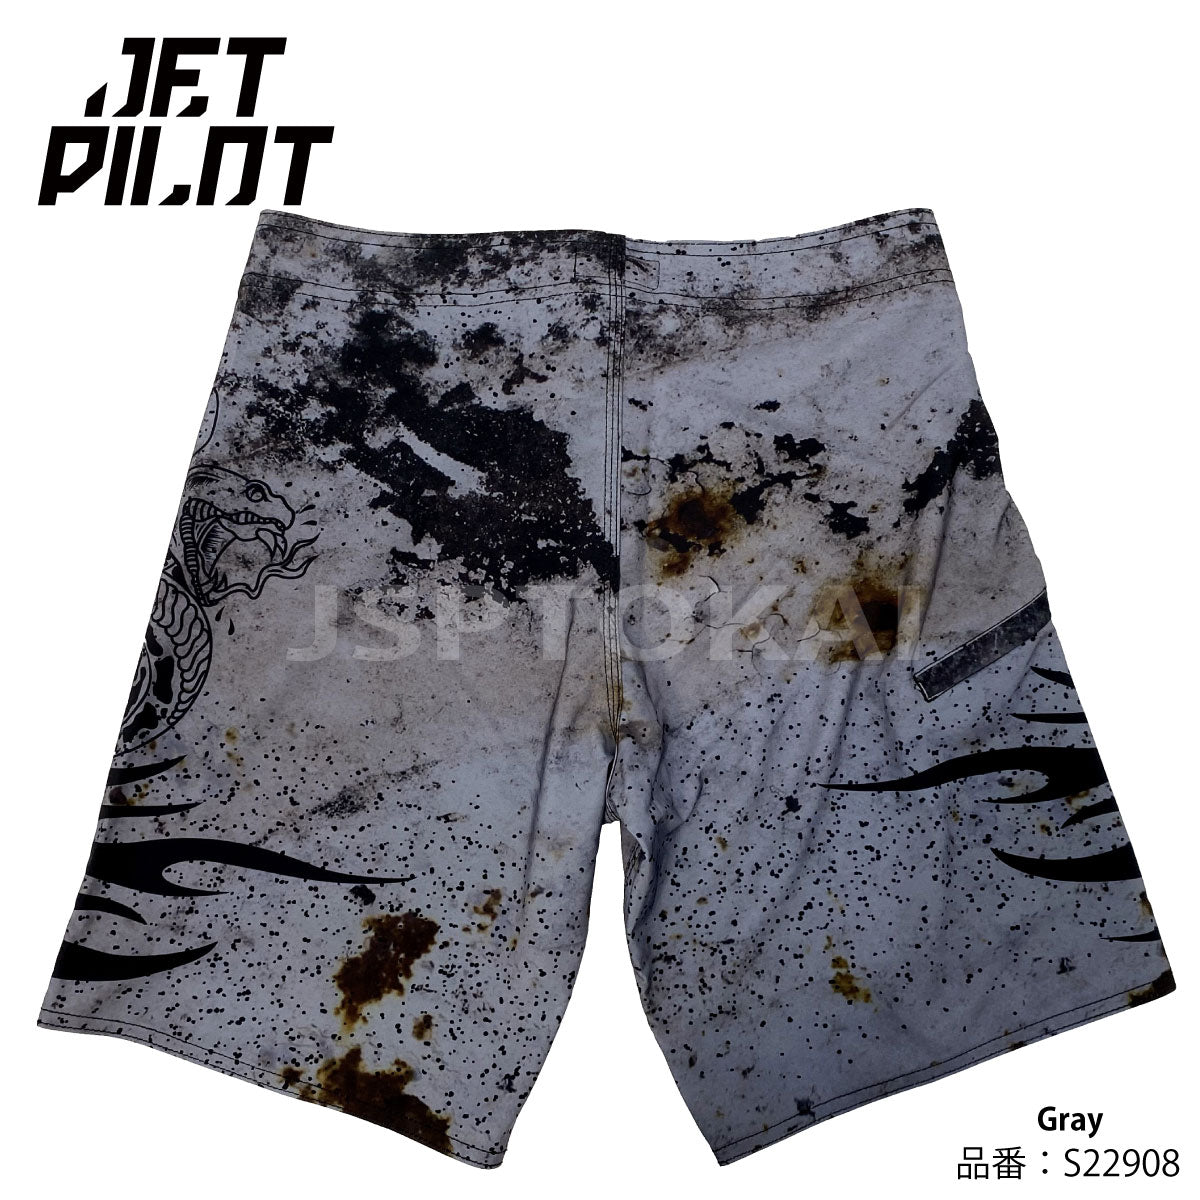 [SALE] JETPILOT TATTS MEN'S BOARDSHORTS Jet Pilot Board Shorts S22908